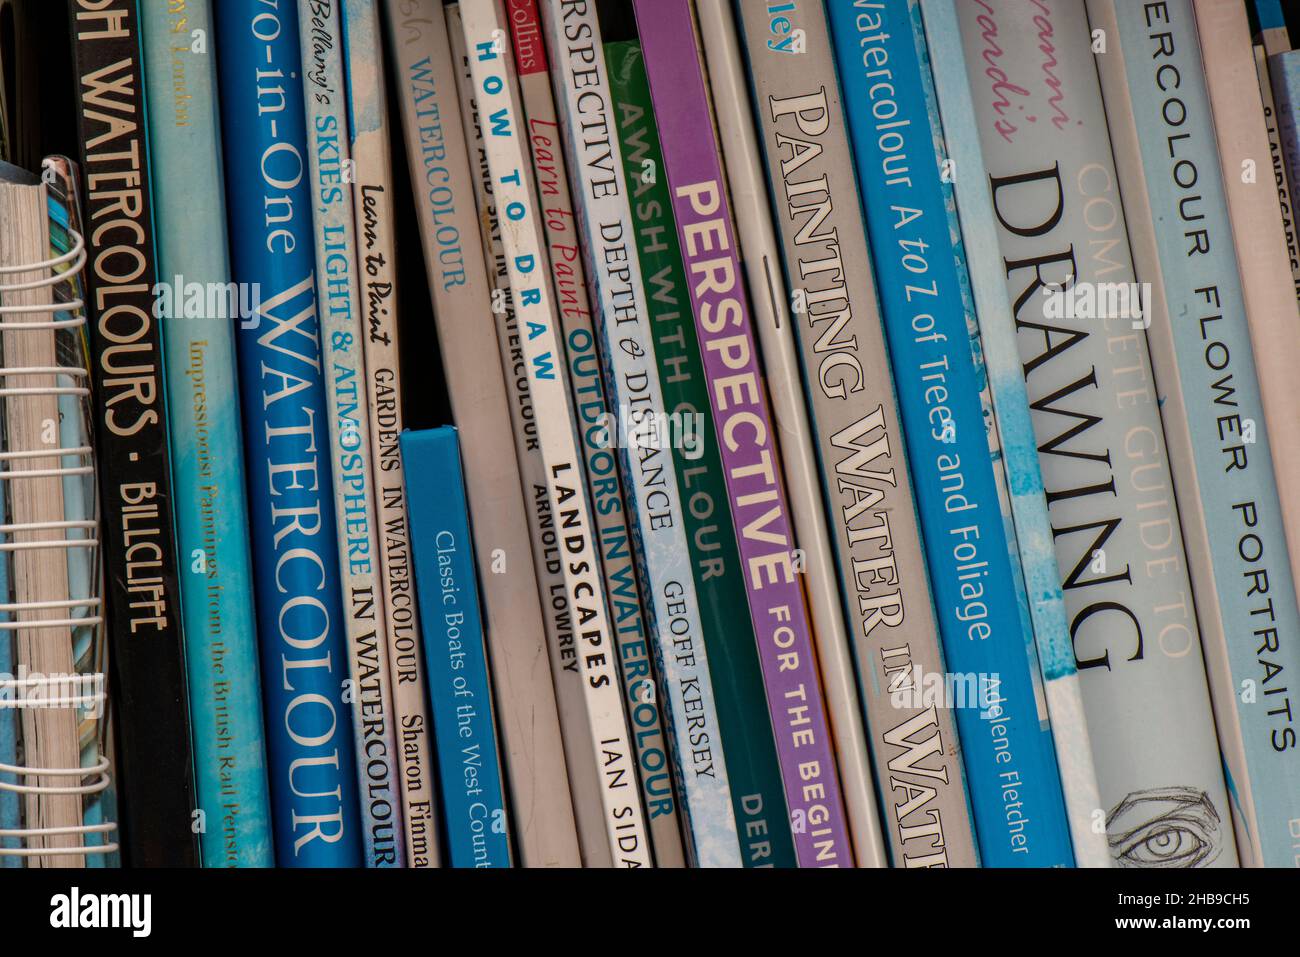 Bücher über Kunst und Zeichnung auf einem Bücherregal, Künstlerunterrichts- und Nachschlagewerke mit verschiedenen Titeln, die in einer Studie auf einem Bücherregal zusammengestapelt sind. Stockfoto